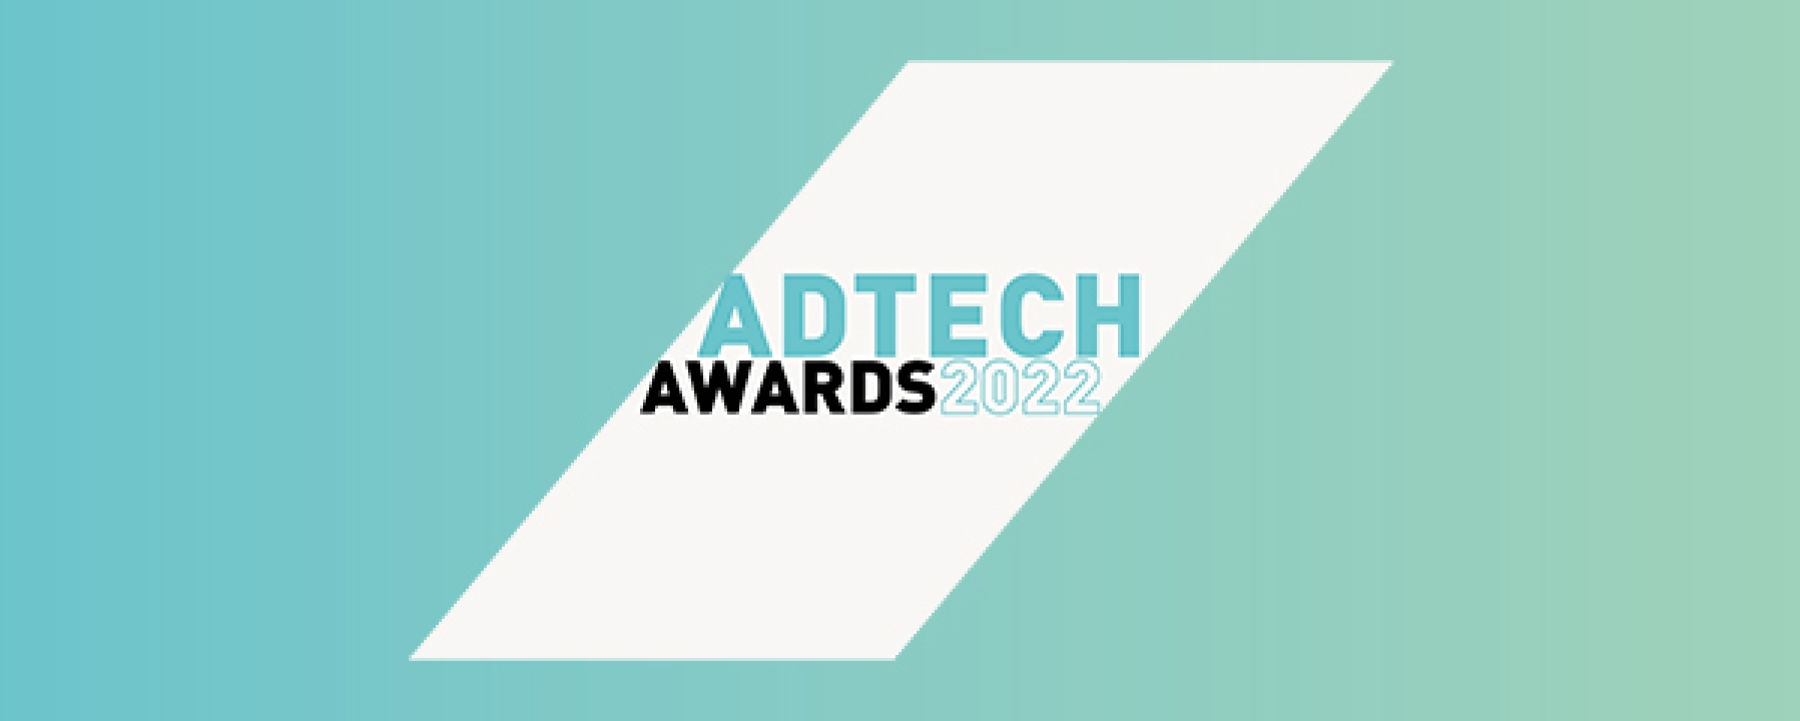 Adtech Awards